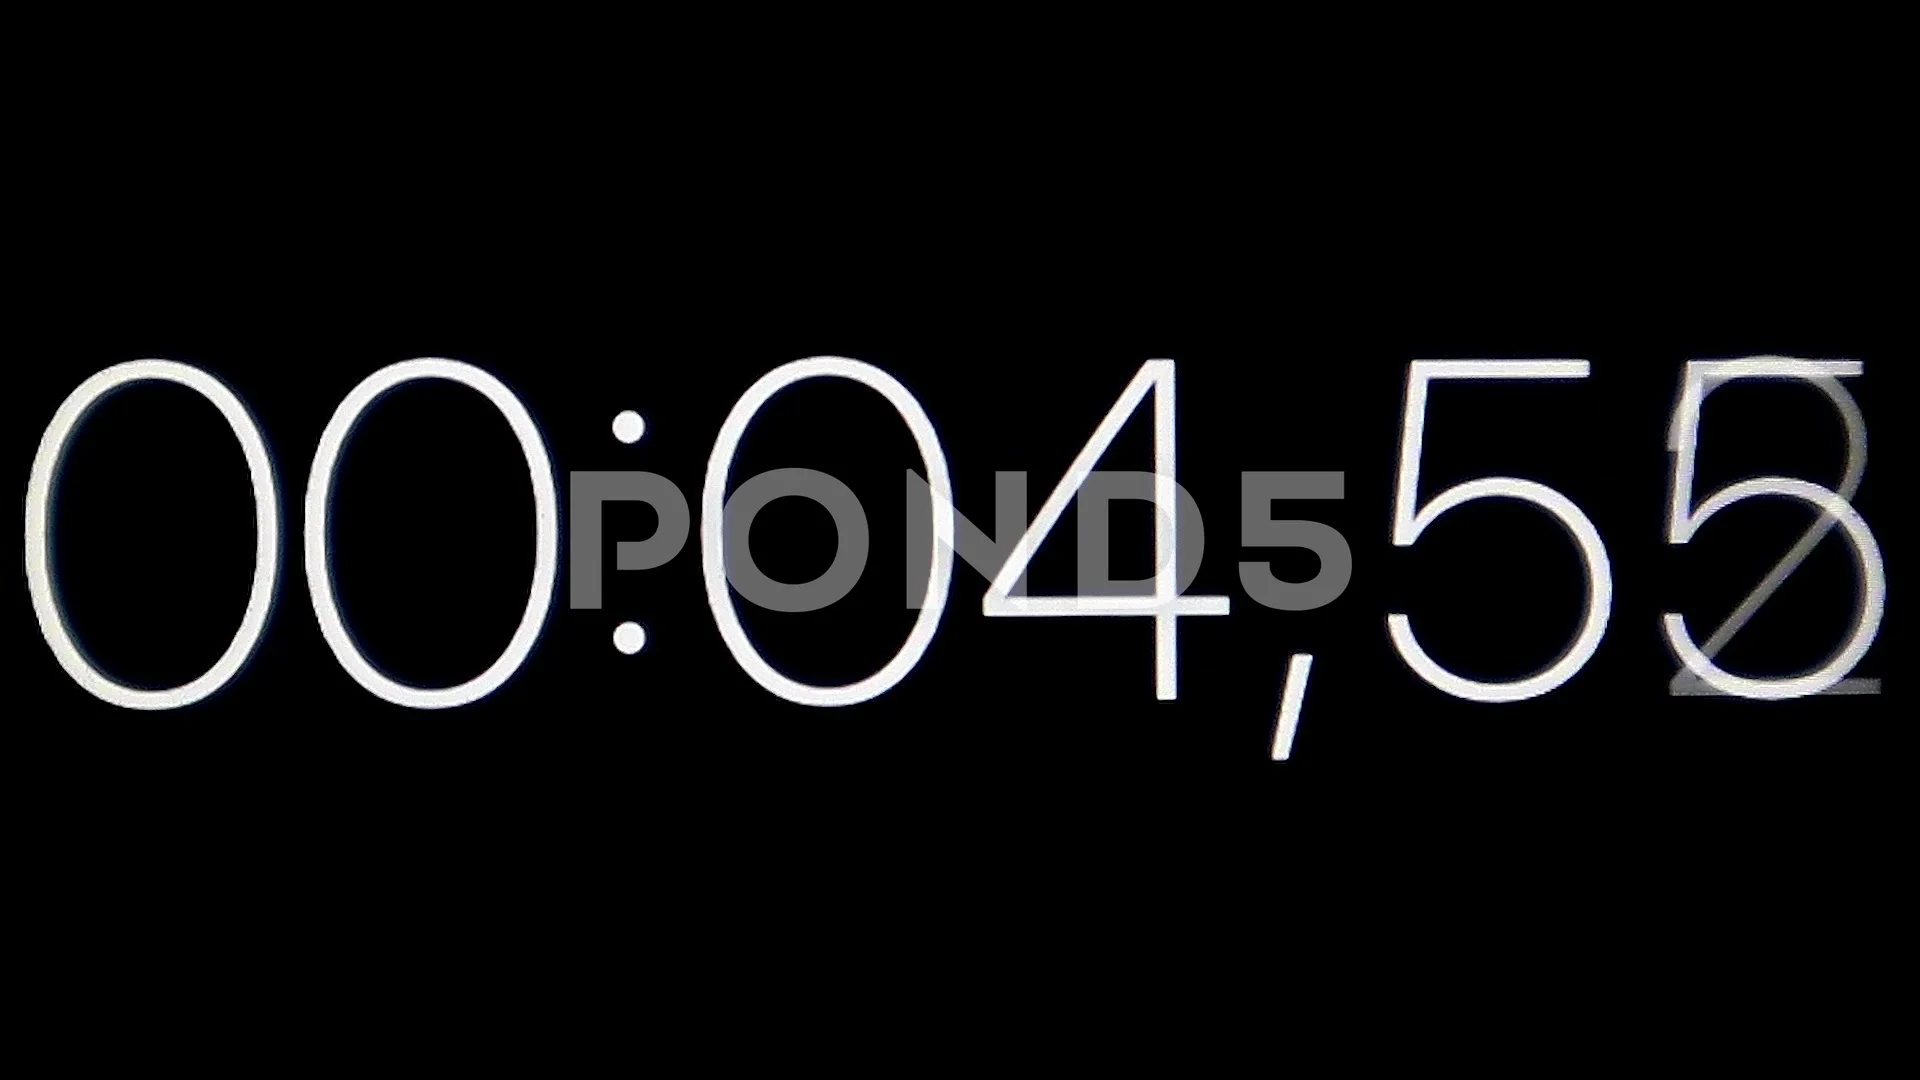 https://images.pond5.com/clock-white-numbers-black-background-footage-143373378_prevstill.jpeg